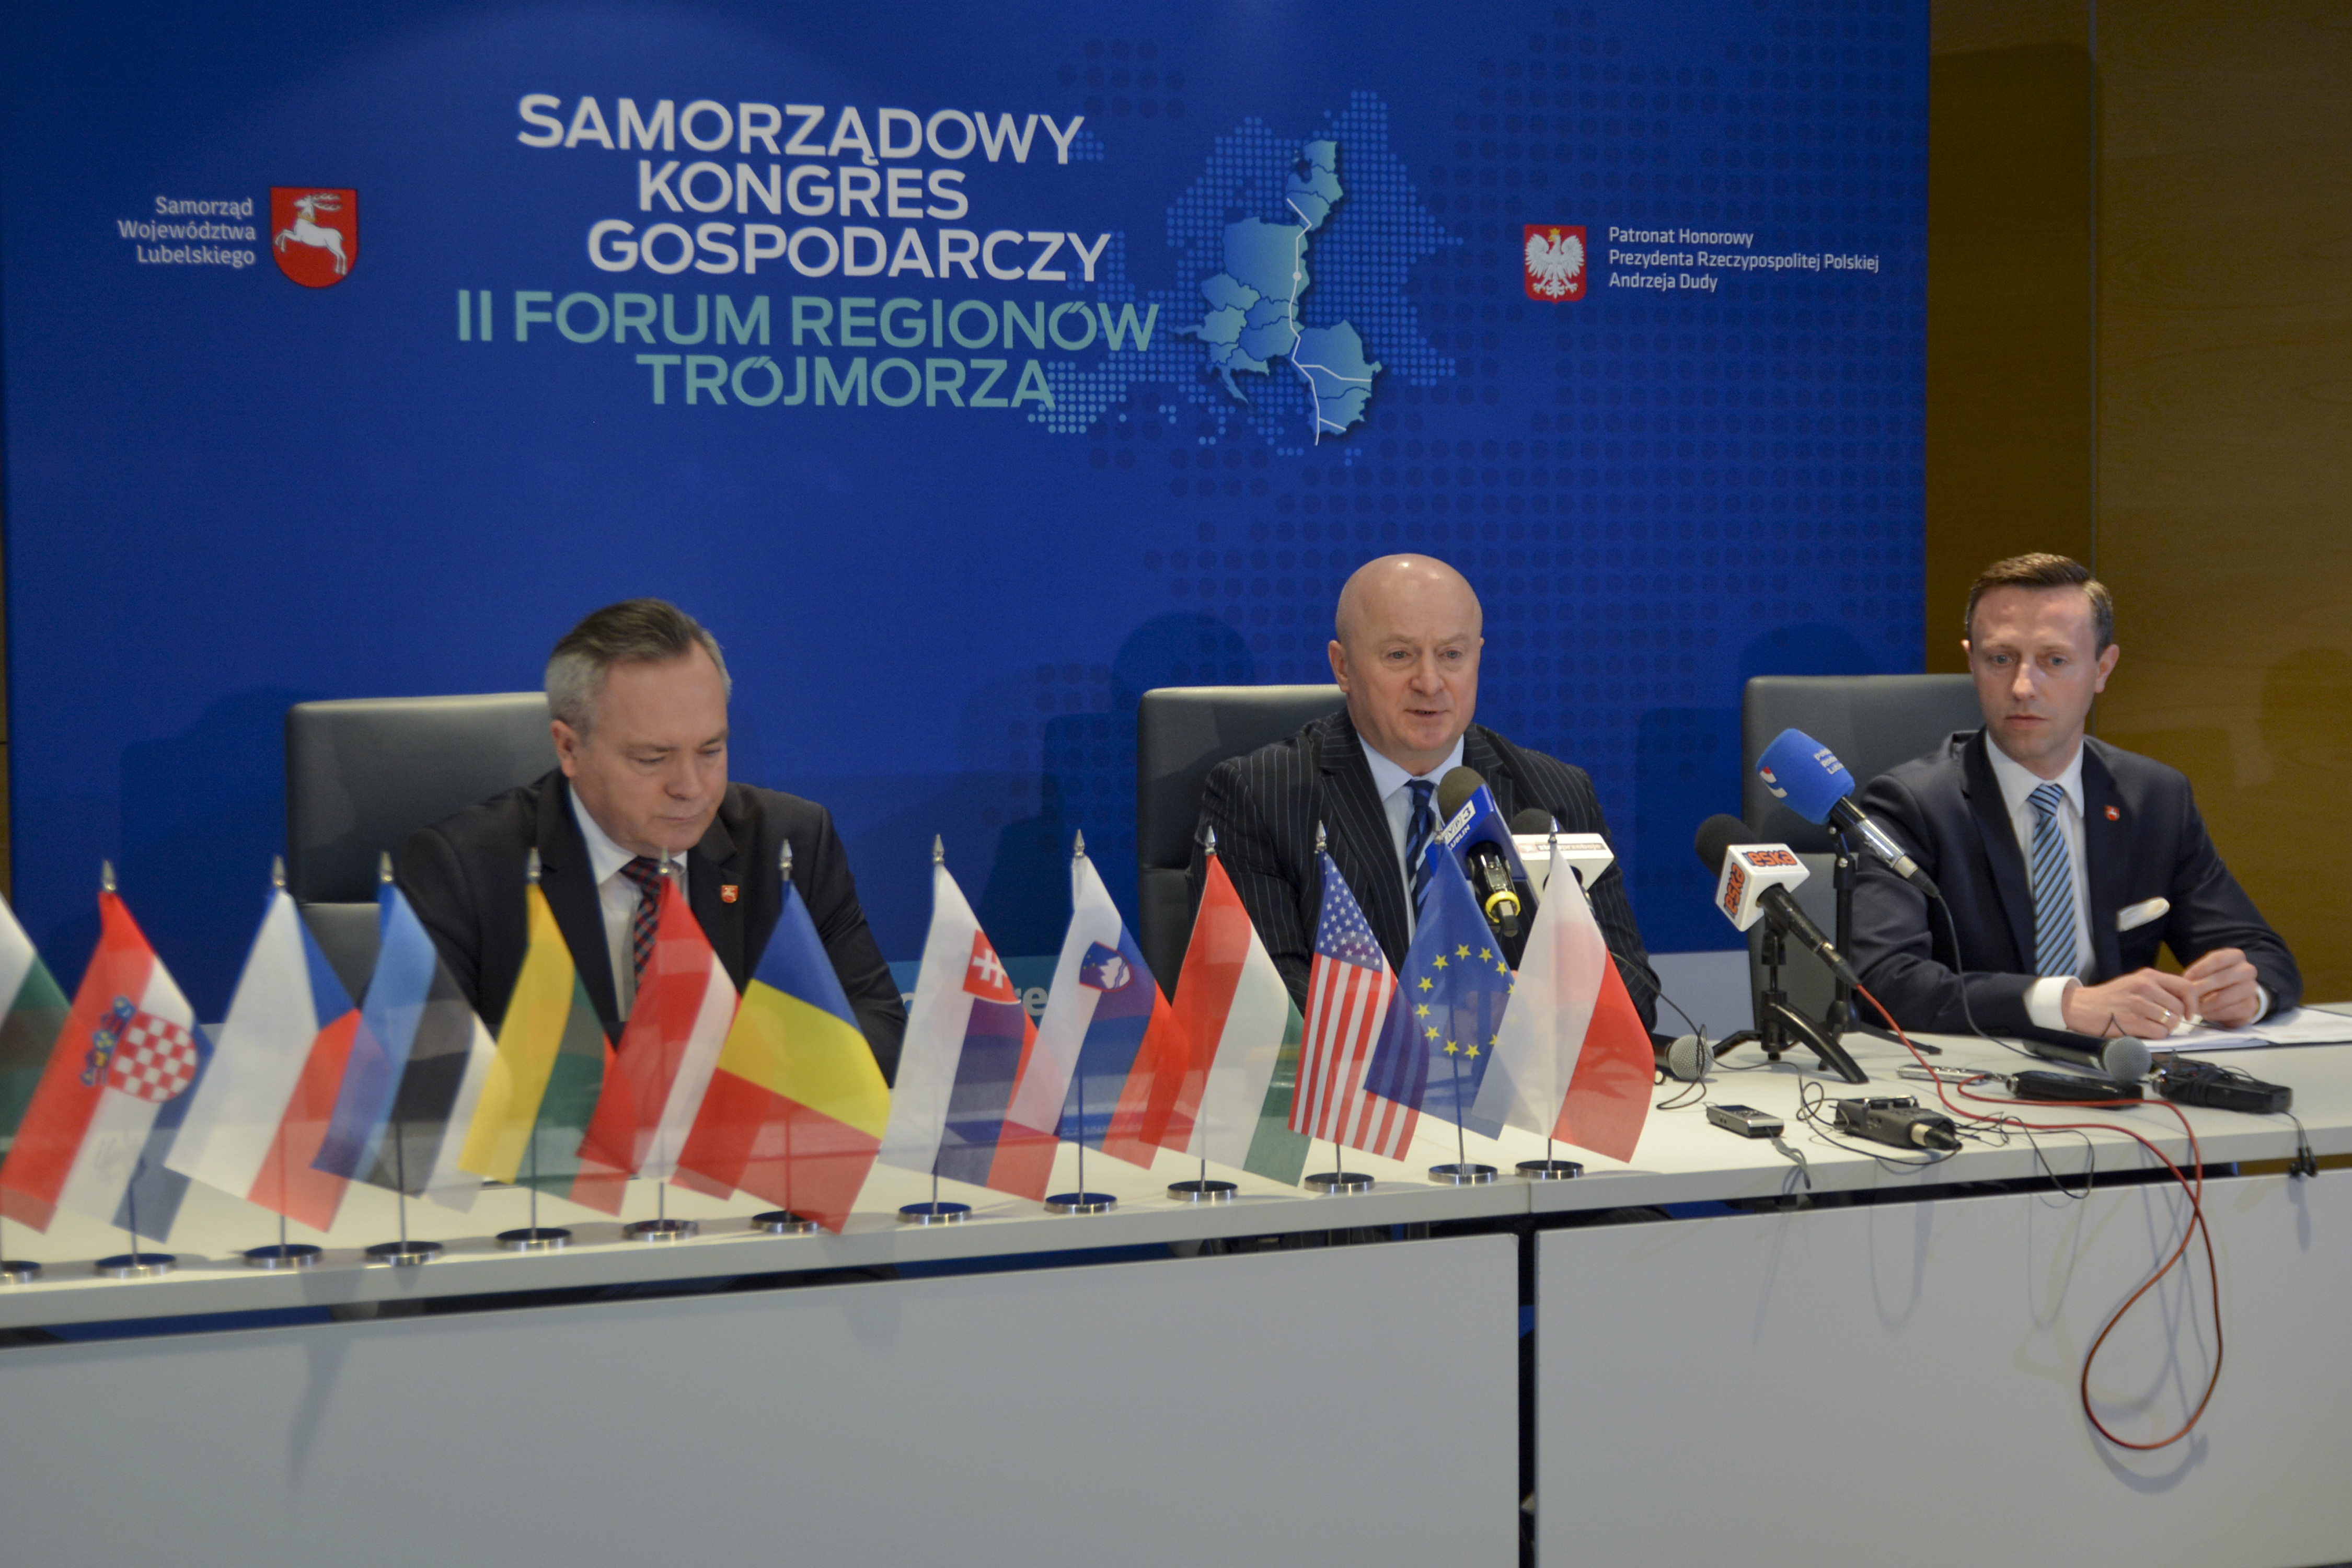 Forum Regionów Trójmorza – konferencja prasowa